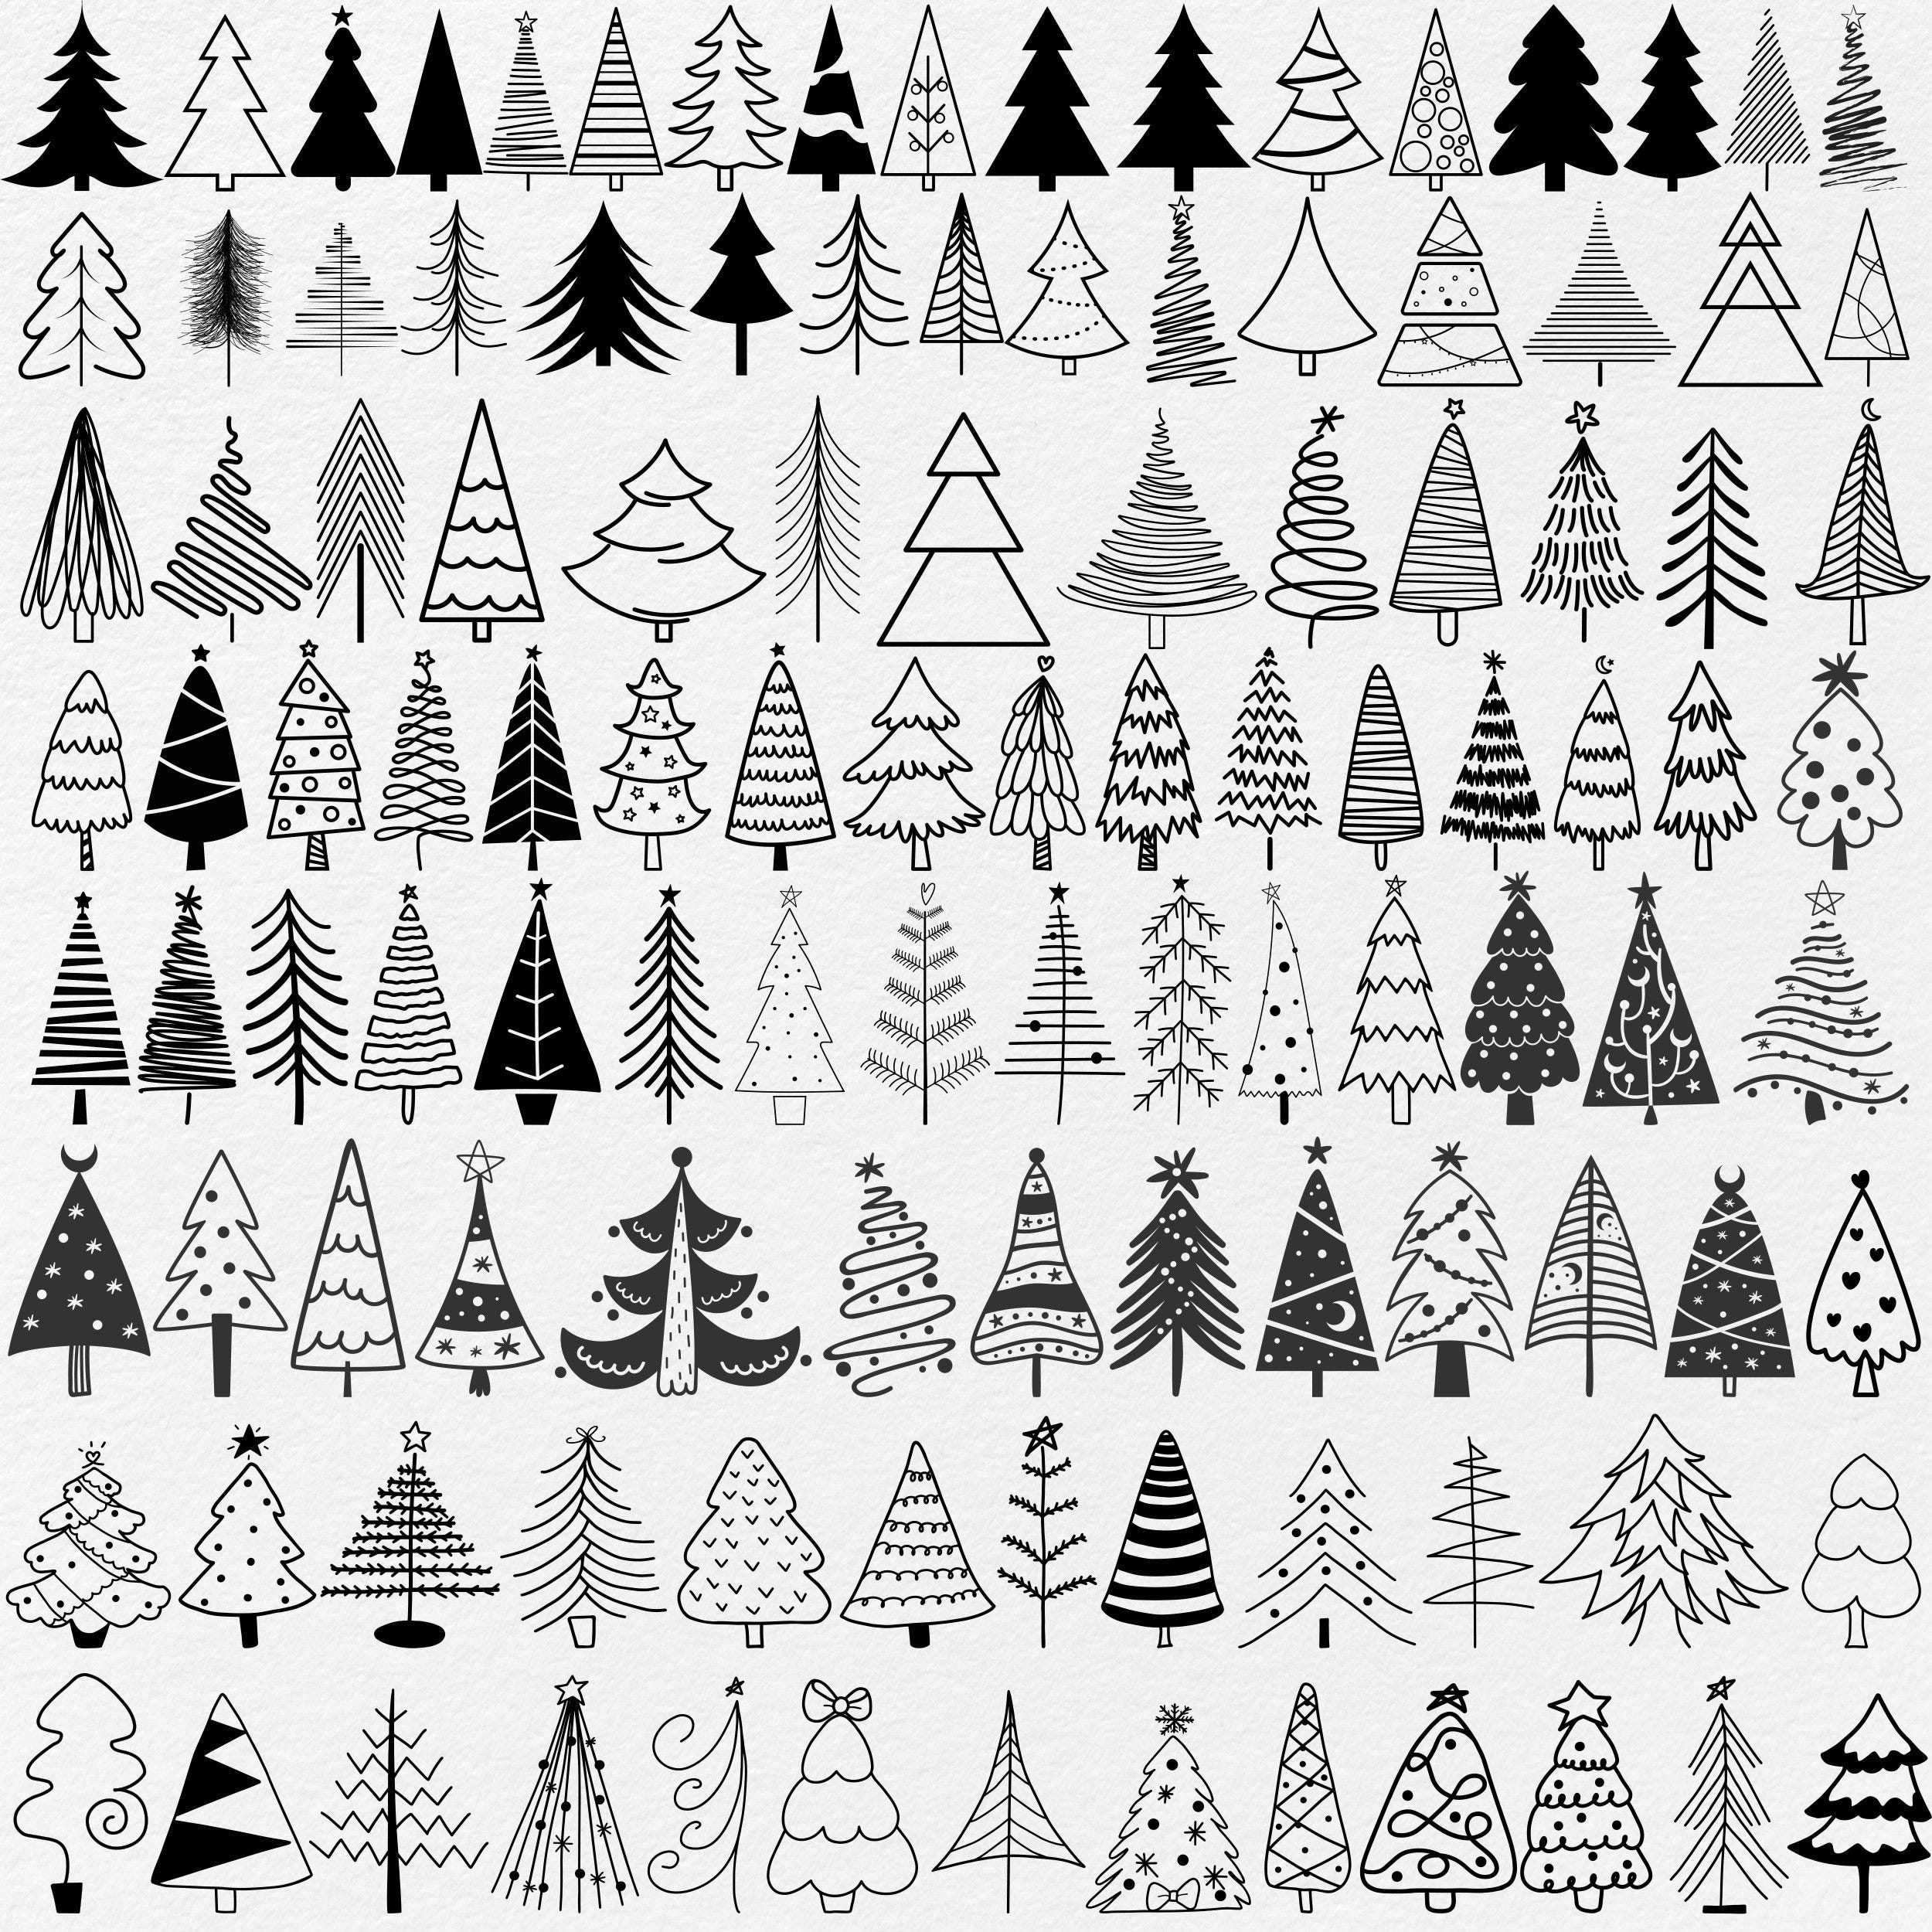 100+ Christmas Tree Svg Png Bundle, Christmas Tree Outline, Christmas Tree Svg Hand Drawn, Christmas Ornaments Svg, Christmas Tree Clipart